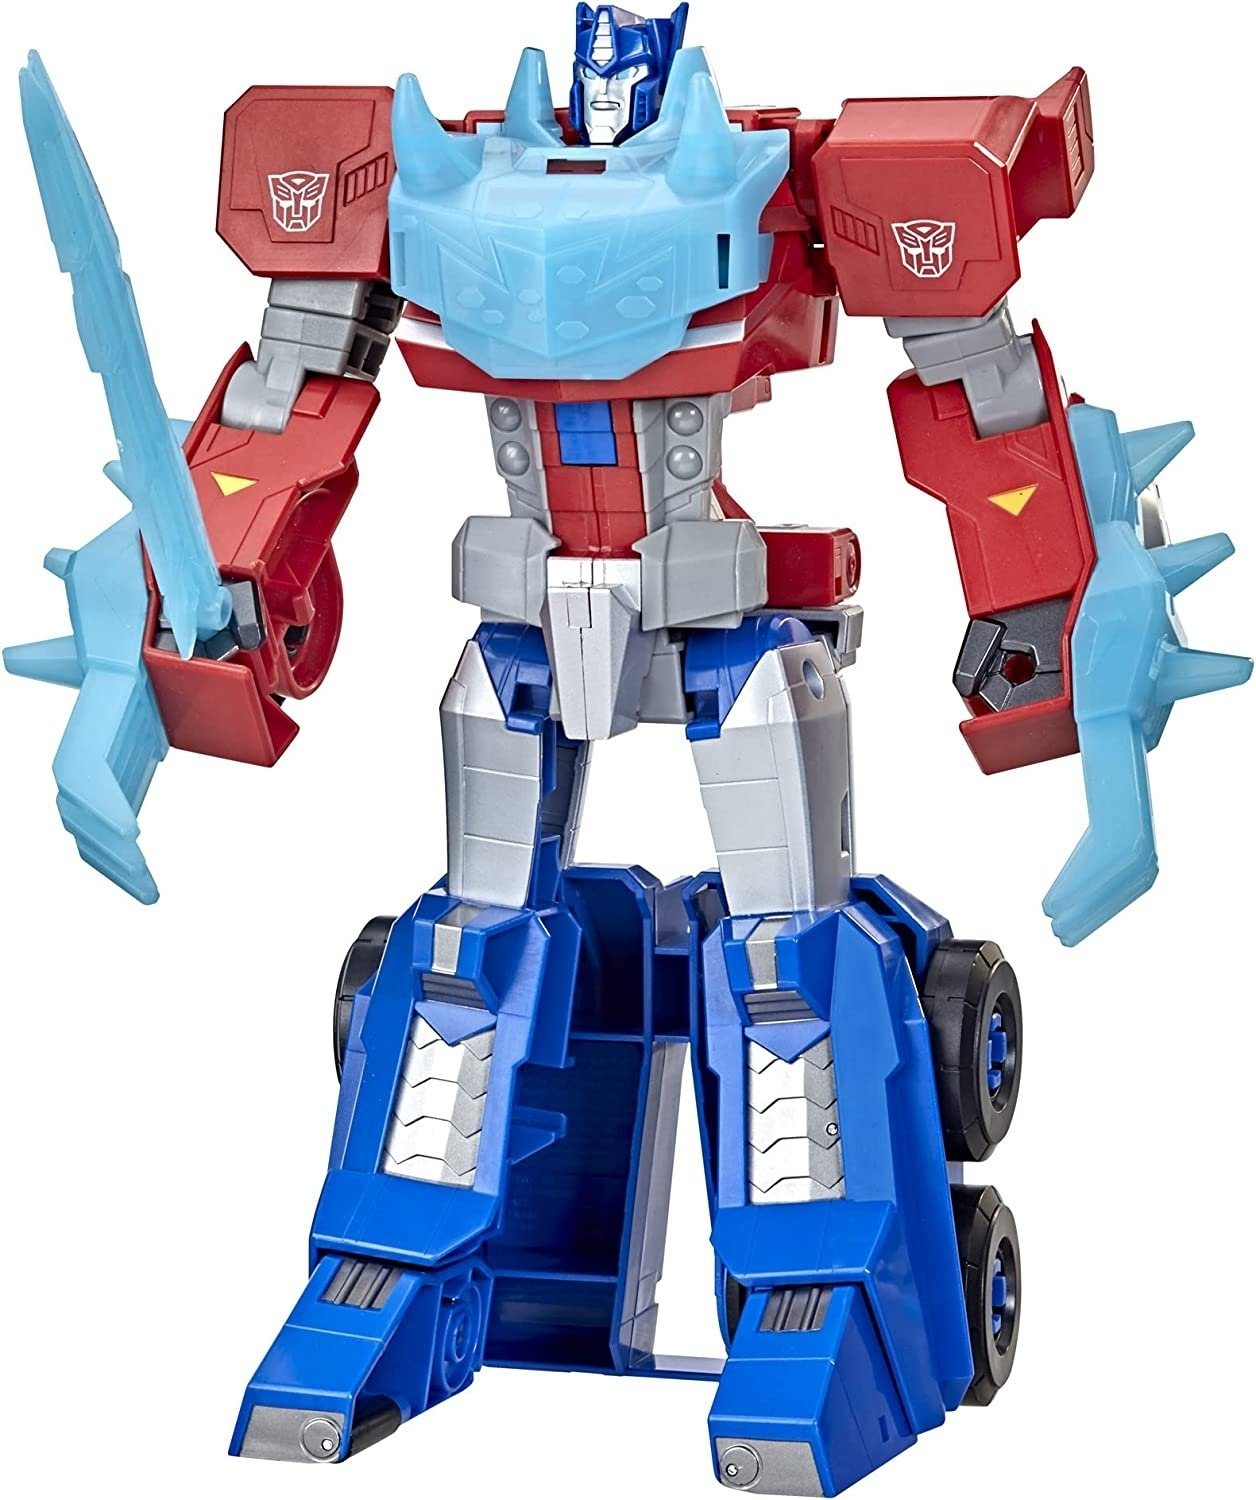 Hasbro Actionfigur Transformers Cyberverse Adventures Roll N’ Change Optimus Prime mit Licht- und Soundeffekten